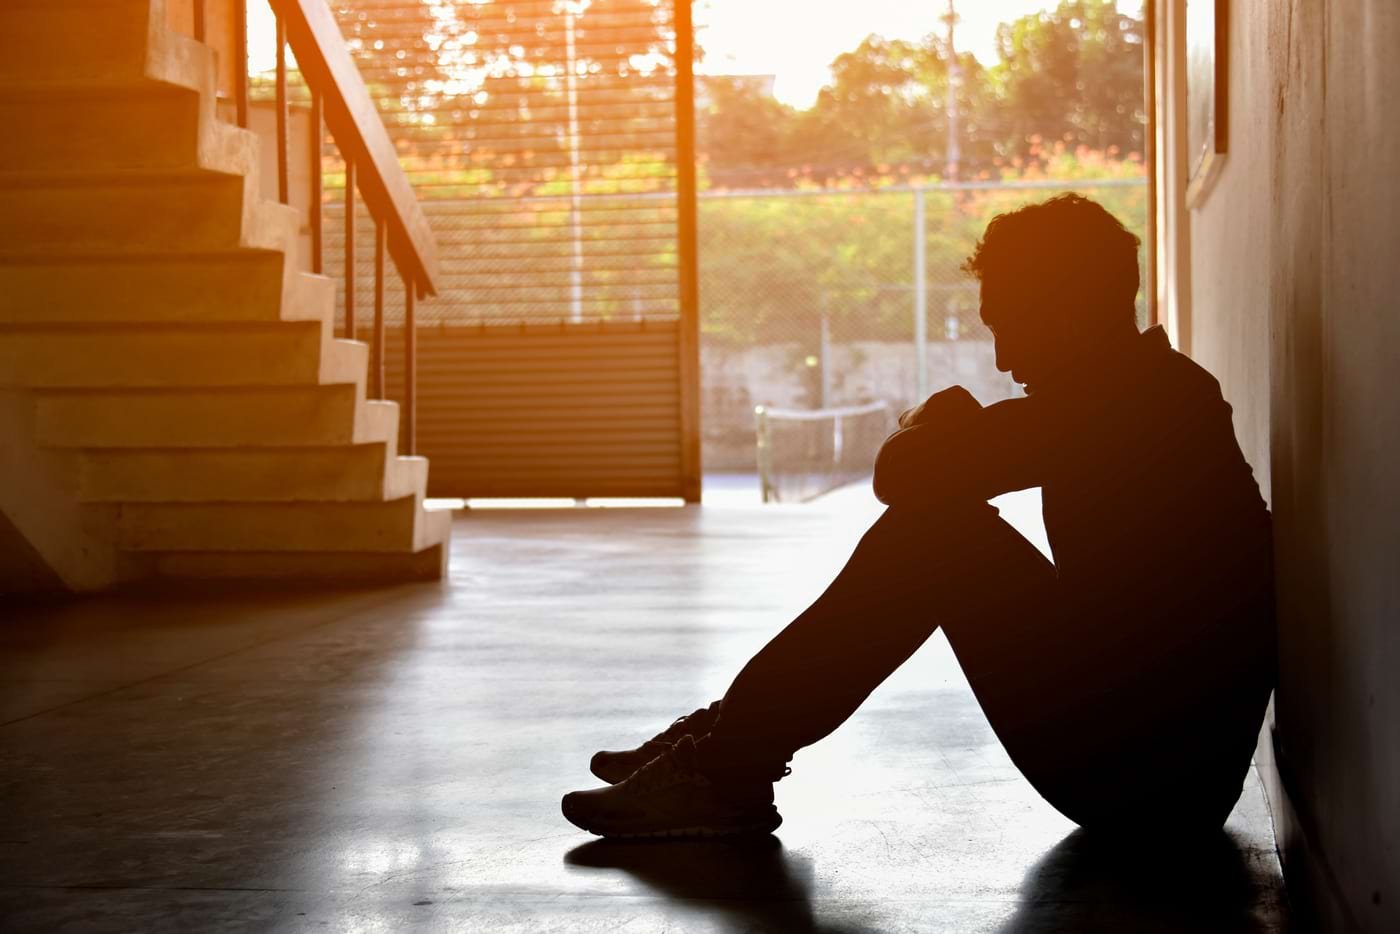  Peste jumătate dintre persoanele cu afecţiuni autoimune suferă de depresie, anxietate